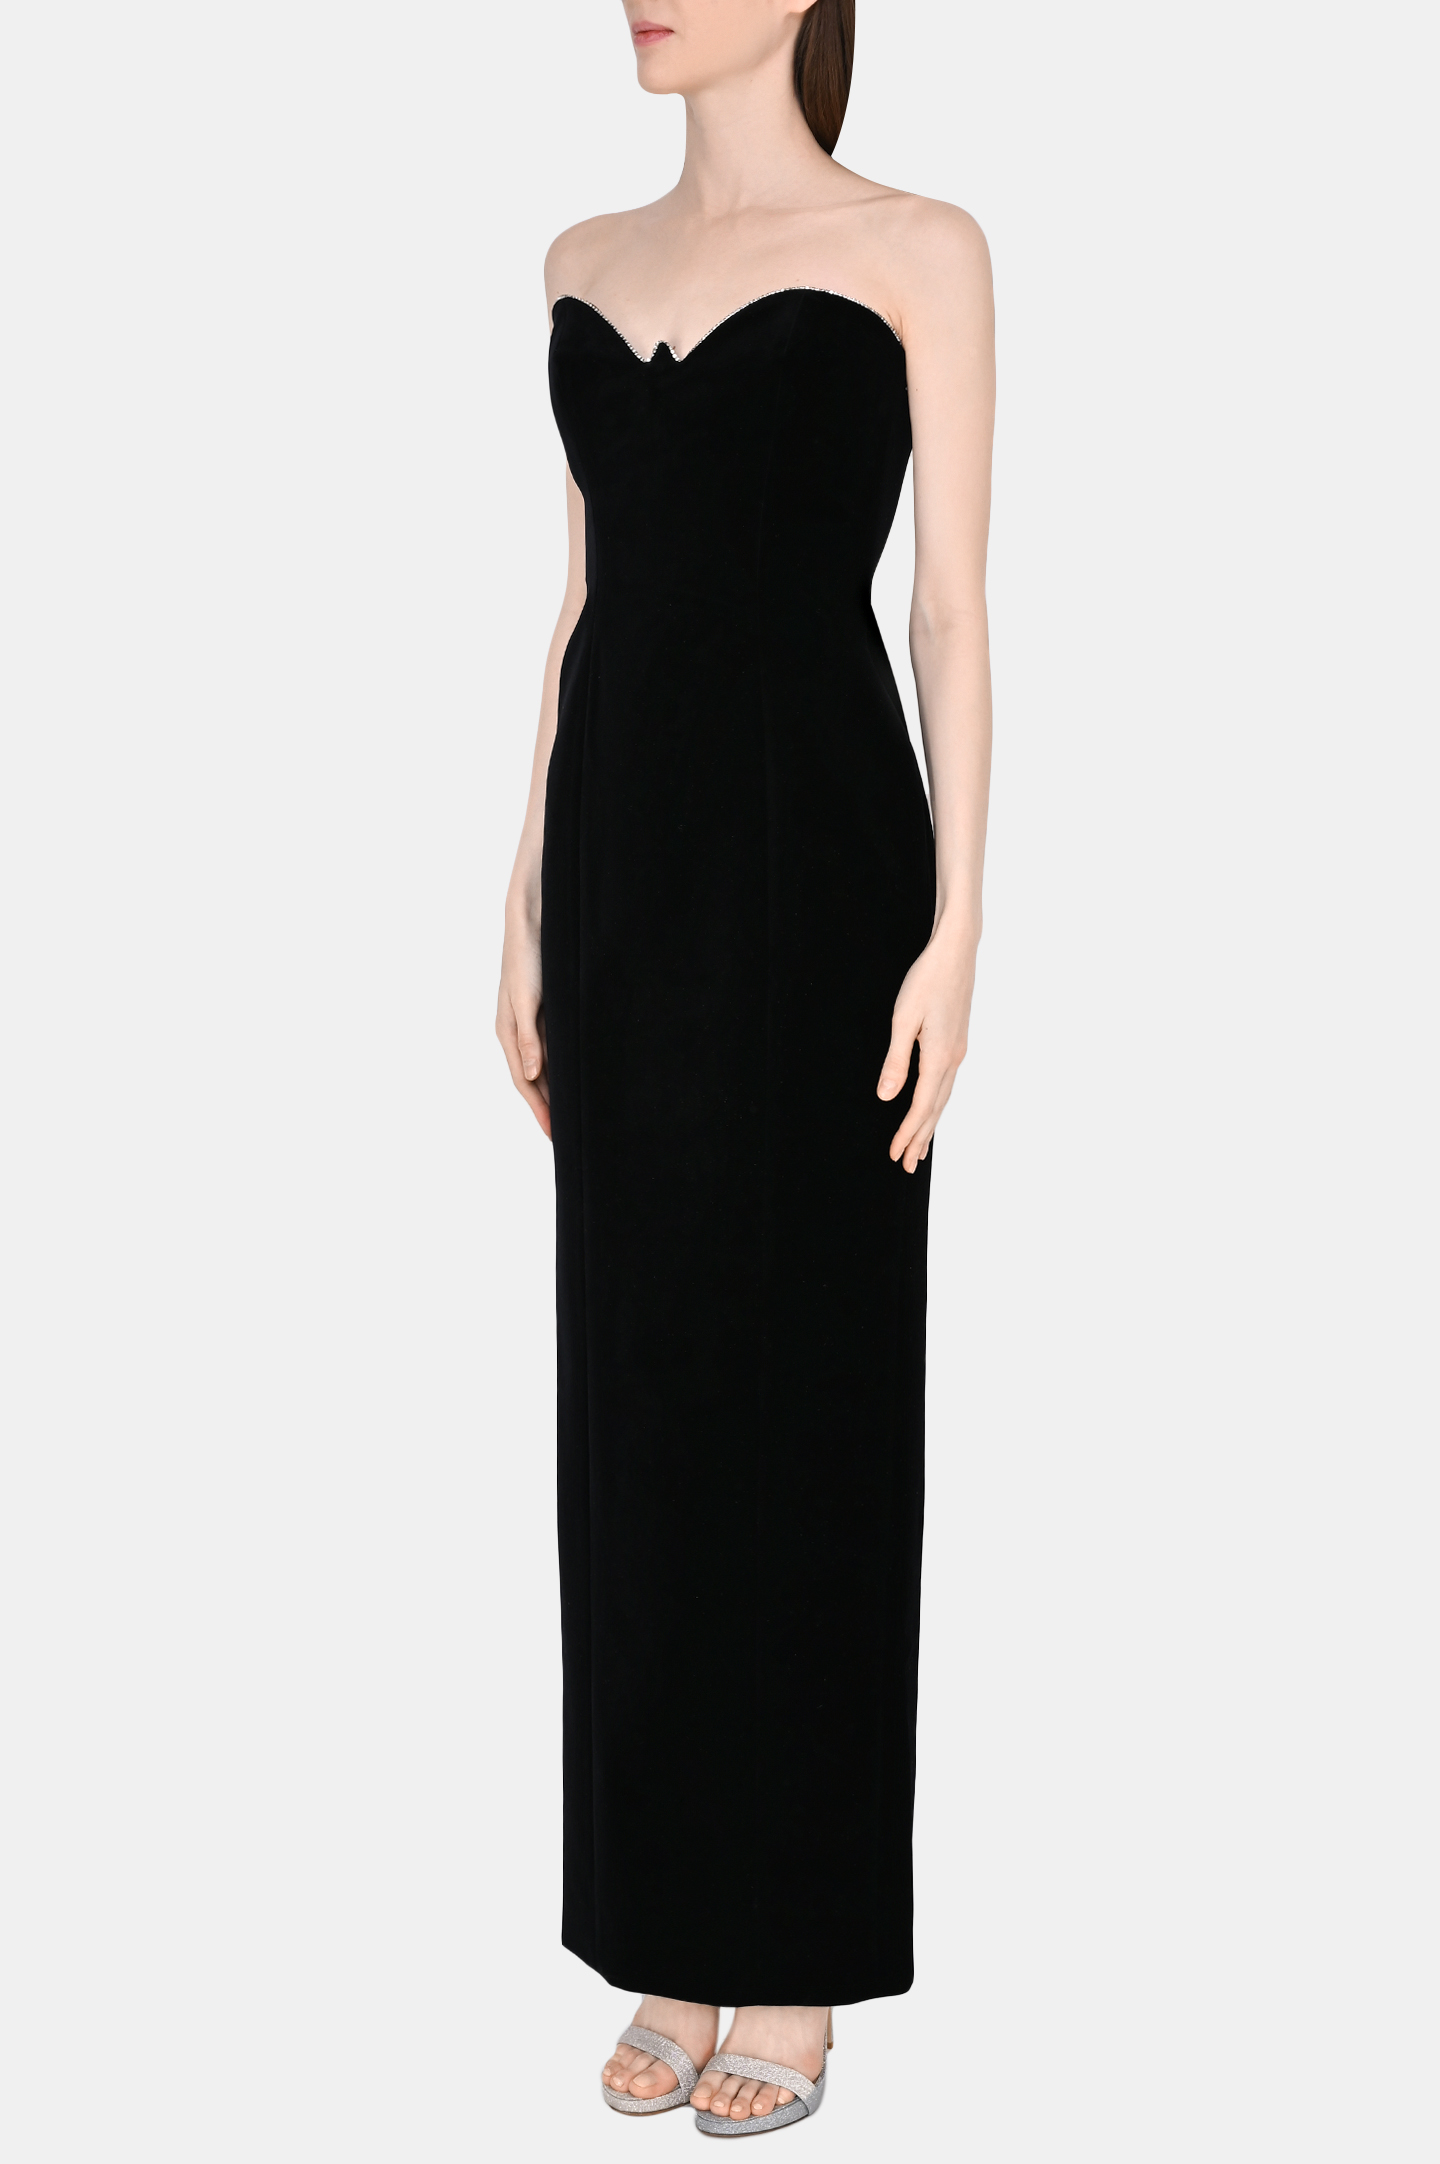 Платье ALEXANDRE VAUTHIER 223DR1718B 1719-223, цвет: Черный, Женский